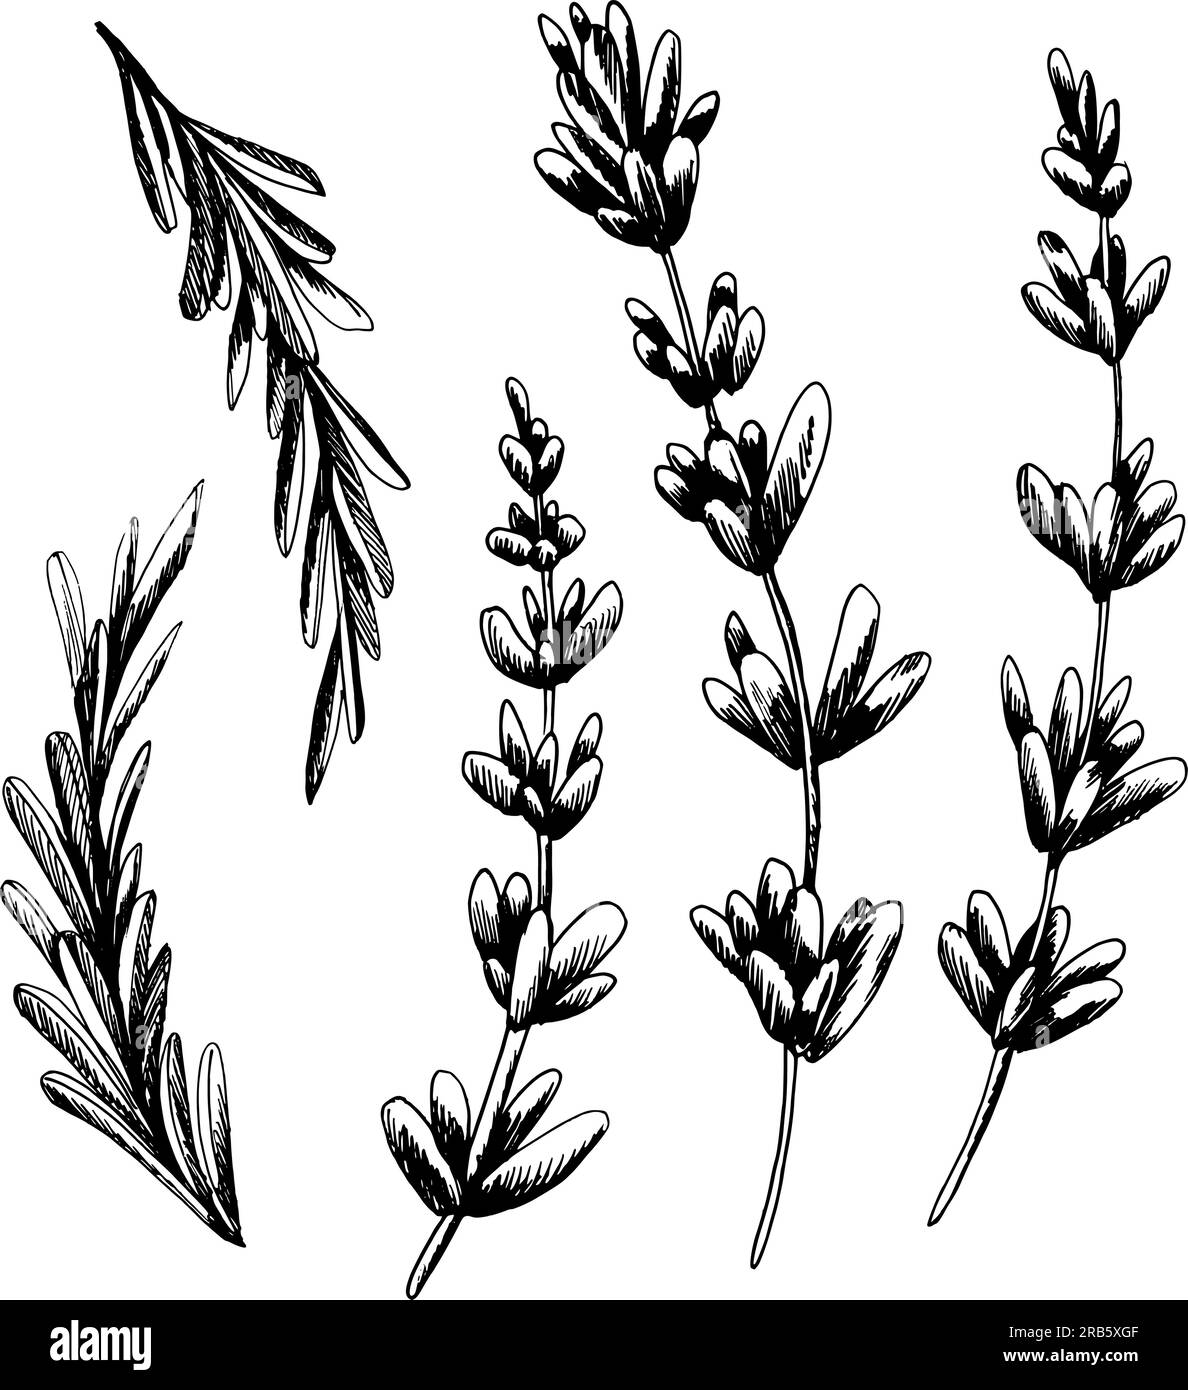 Rametti, fiori e foglie di lavanda in bianco e nero. Illustrazione grafica lineare, disegnata a mano. Vettoriale, EPS. Set di oggetti isolati su un bianco Illustrazione Vettoriale